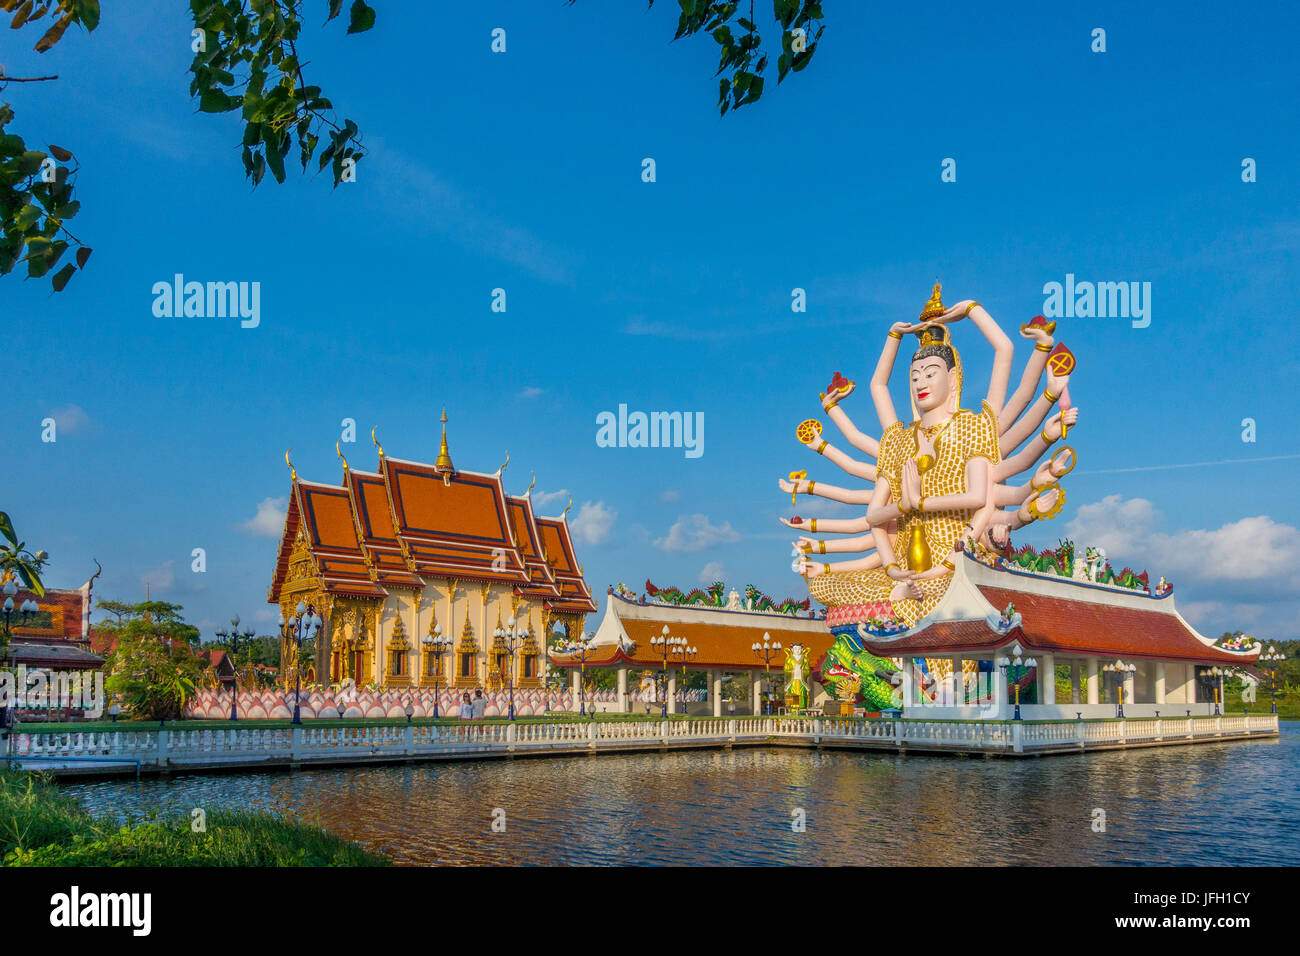 God Lao Suwannaram temple in Ban Bo Phut, Ko Samui island, Thailand, Asia Stock Photo